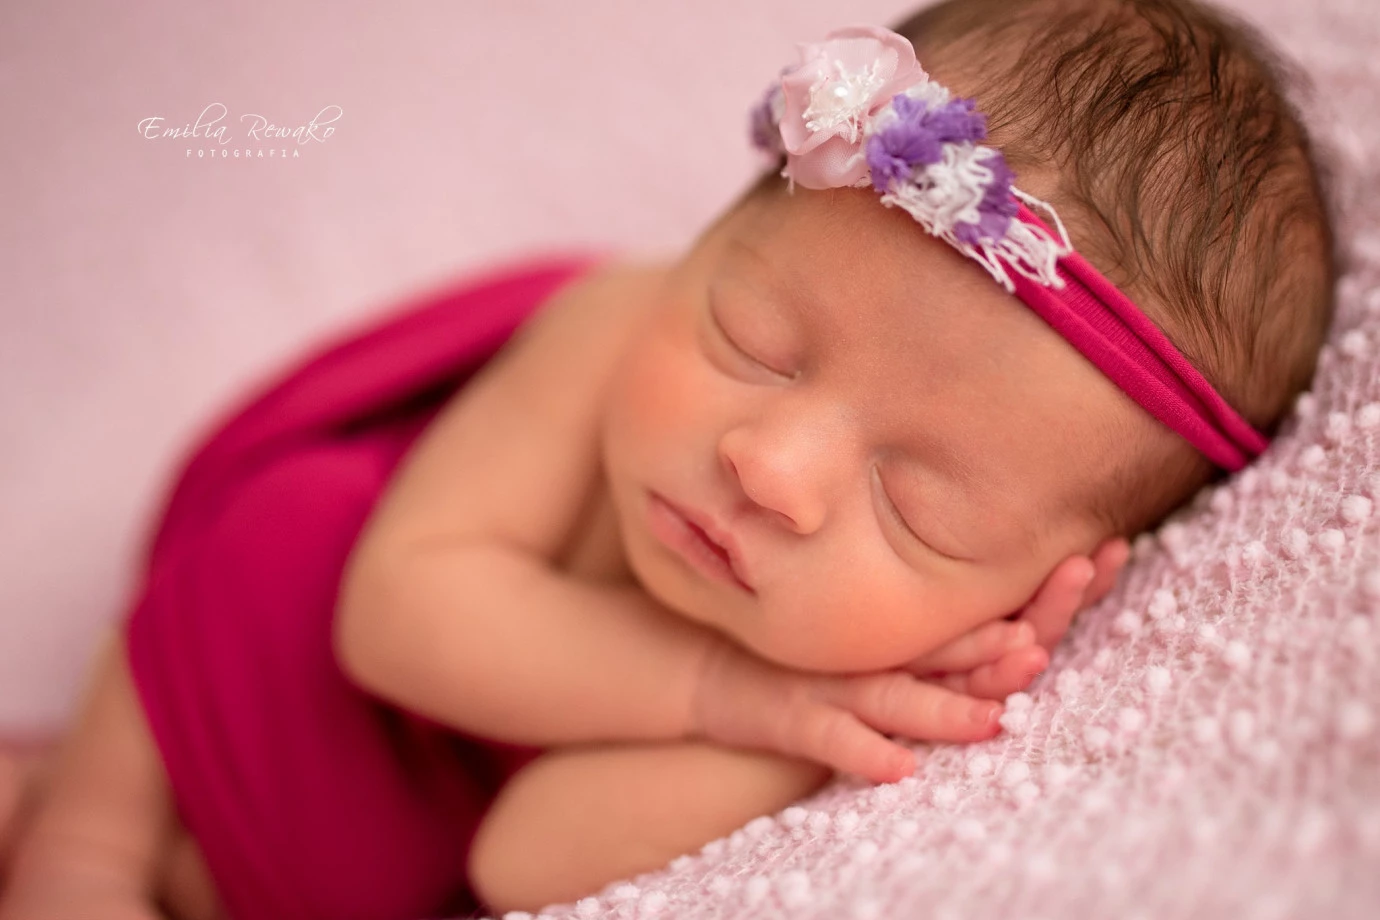 fotograf gdynia emilia-rewako-fotografia portfolio zdjecia noworodkow sesje noworodkowe niemowlę